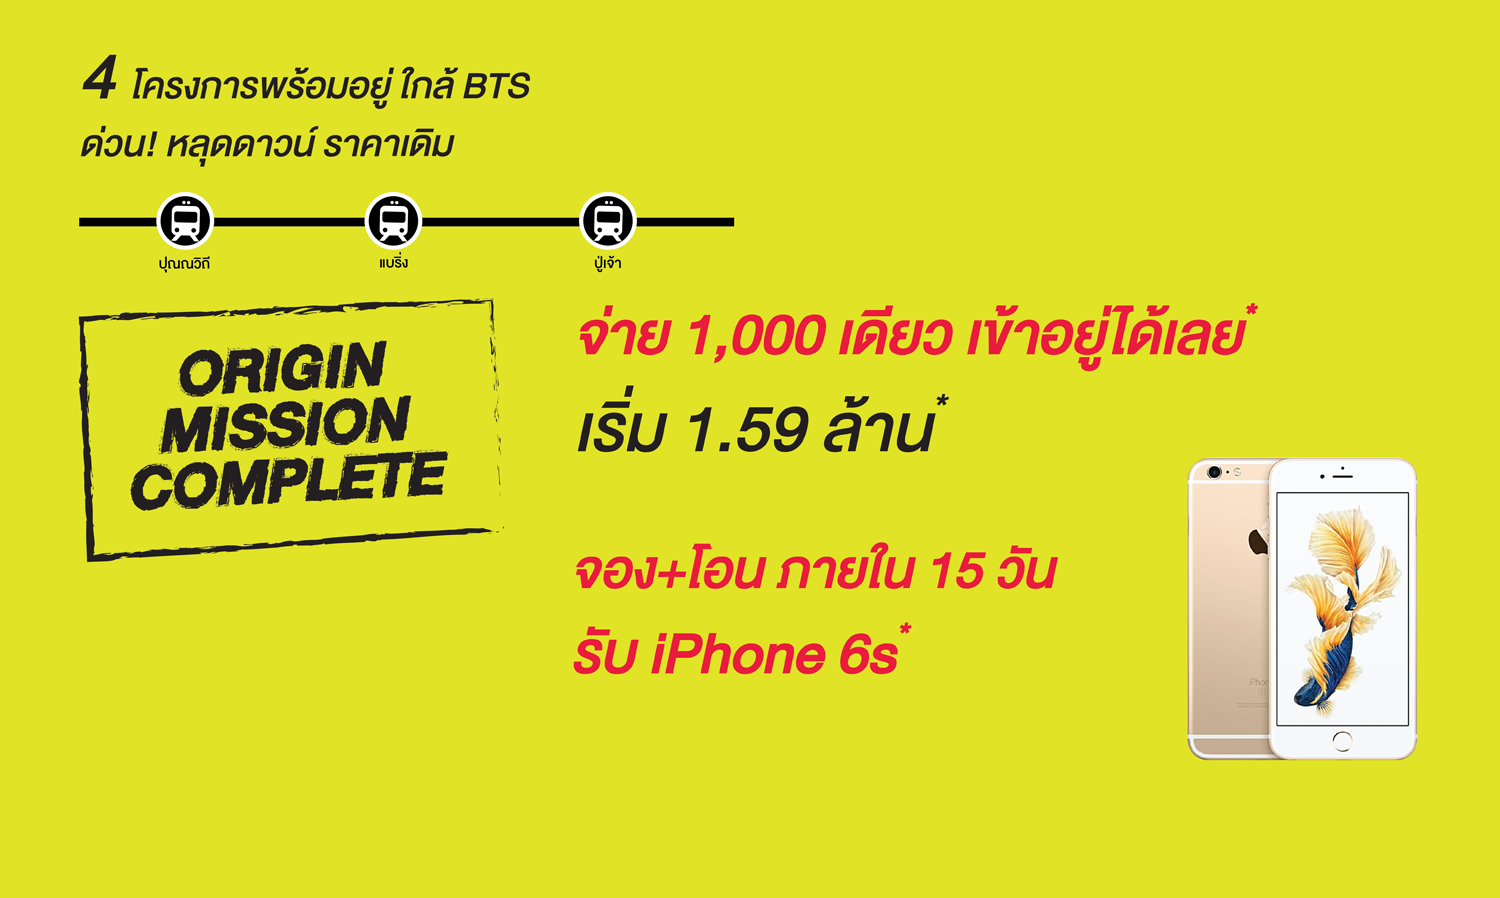 4 โครงการคอนโดพร้อมอยู่ ใกล้ BTS ปุณณวิถี แบริ่ง ปู่เจ้า ด่วน! หลุดดาวน์ ราคาเดิม จ่าย 1,000 เดียว เข้าอยู่ได้เลย* เริ่ม 1.59 ล้าน*  จอง + โอน ภายใน 15 วัน รับ iPhone 6s*